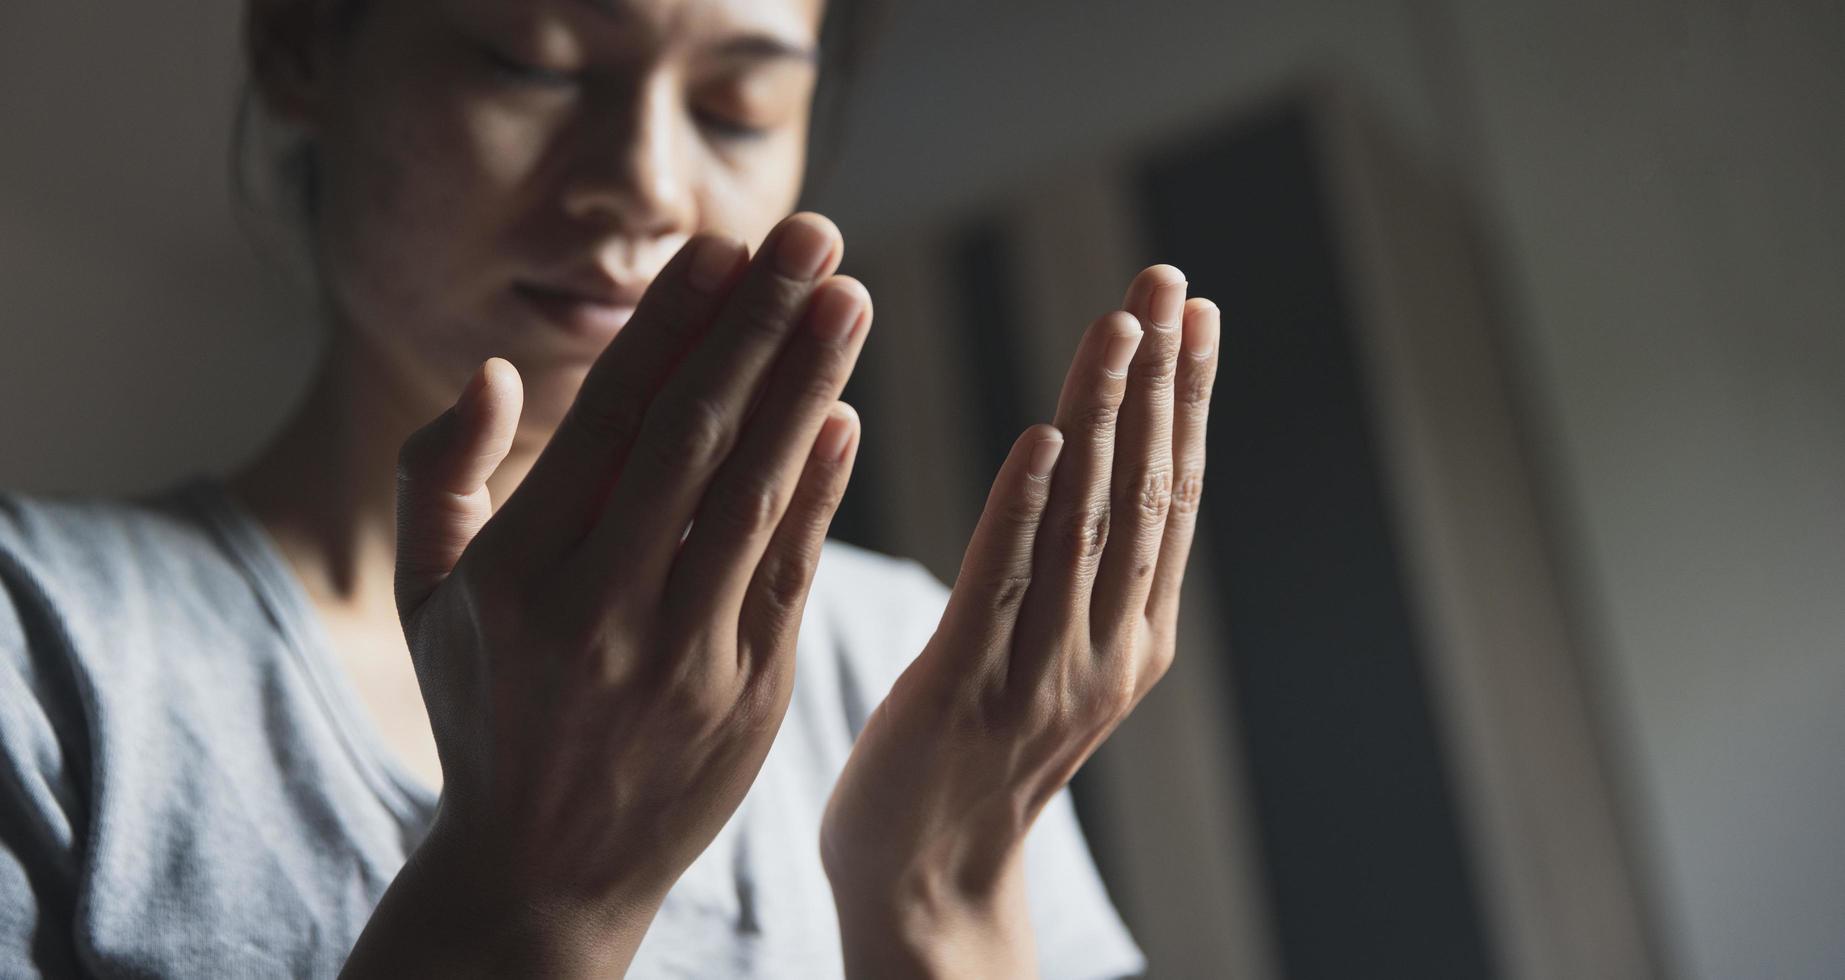 oración de crisis de vida cristiana a dios. mujer reza por la bendición de dios para desear tener una vida mejor. manos de mujer rezando a dios. foto